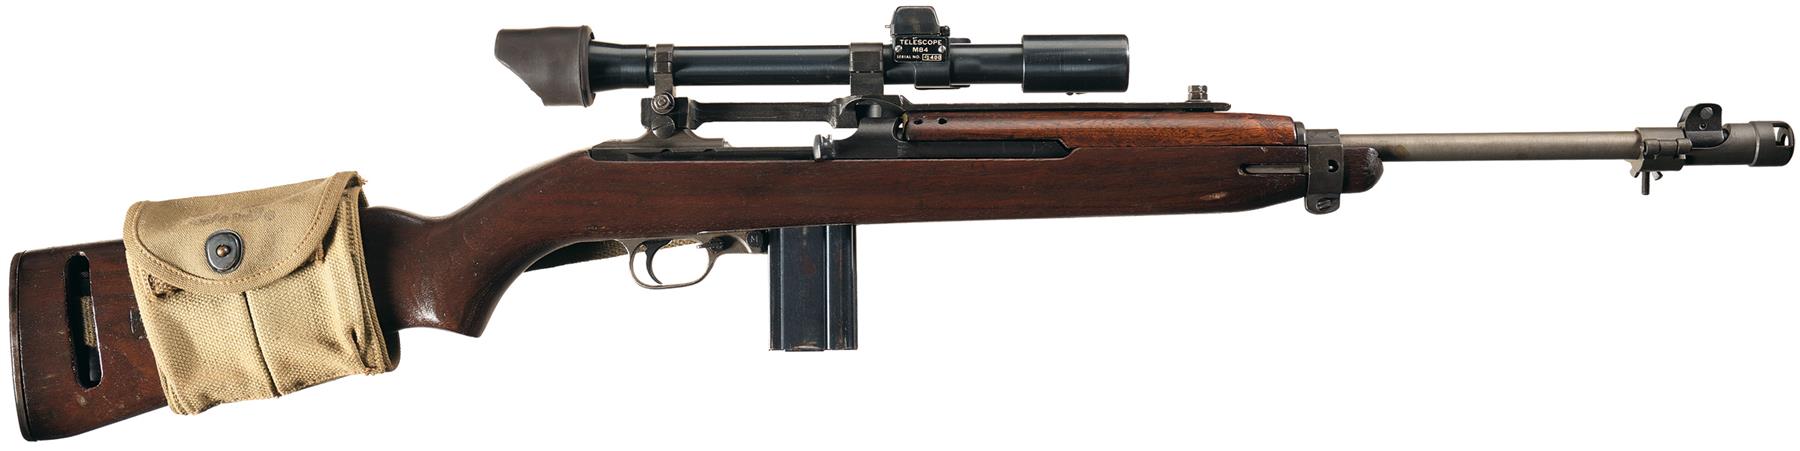 m84 scope manufacturer